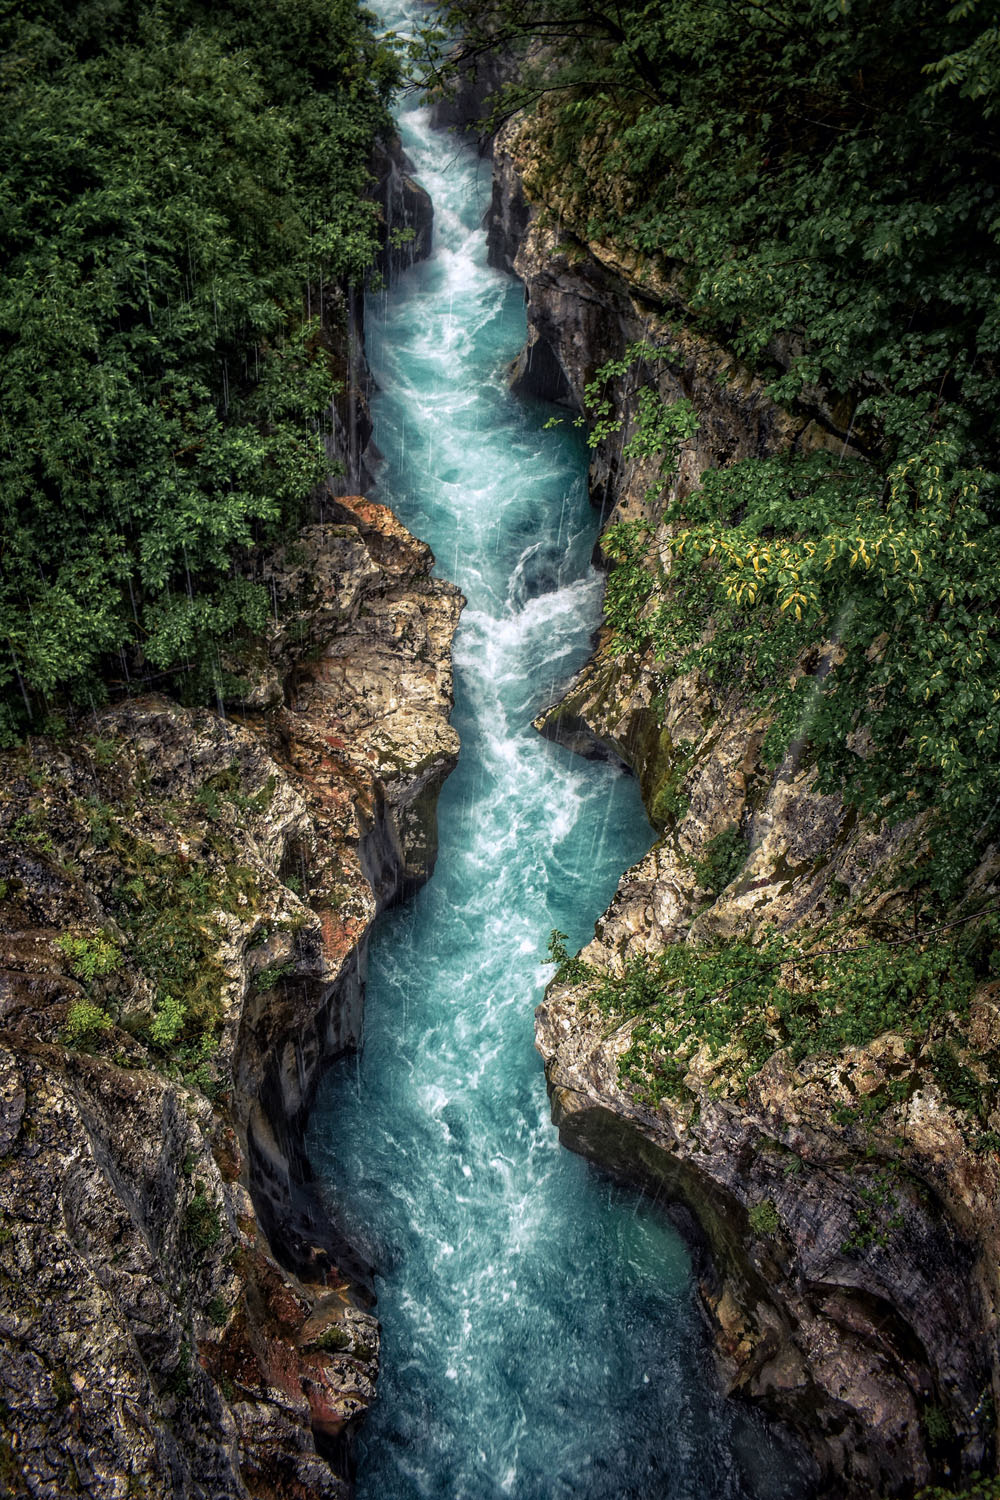 River between rocks